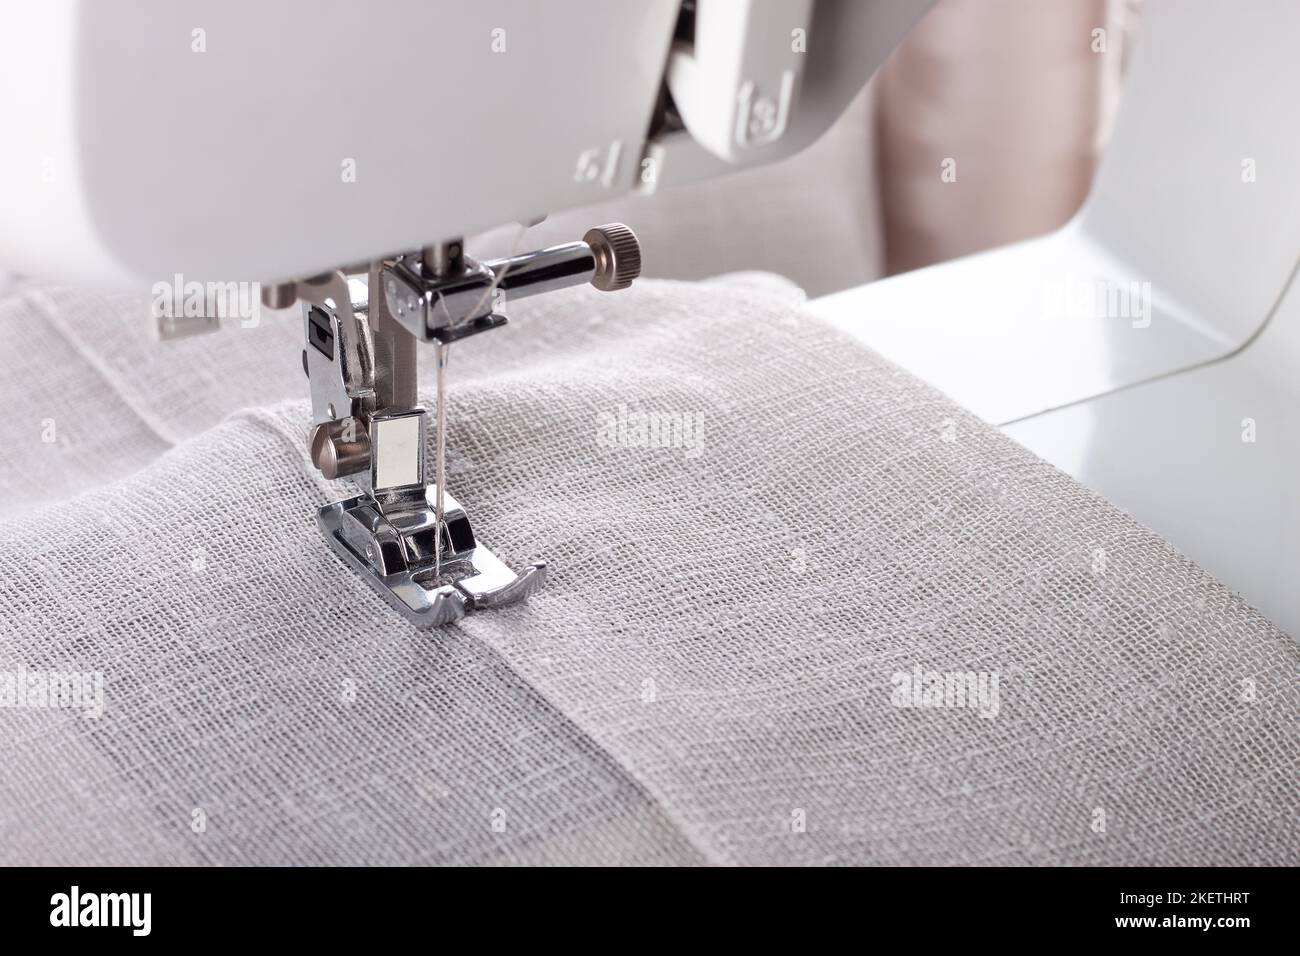 Machine à coudre moderne presser le pied avec le tissu et le fil de lin, gros plan, espace de copie. Processus de couture vêtements, rideaux, tissus d'ameublement. Affaires, passe-temps, h Banque D'Images